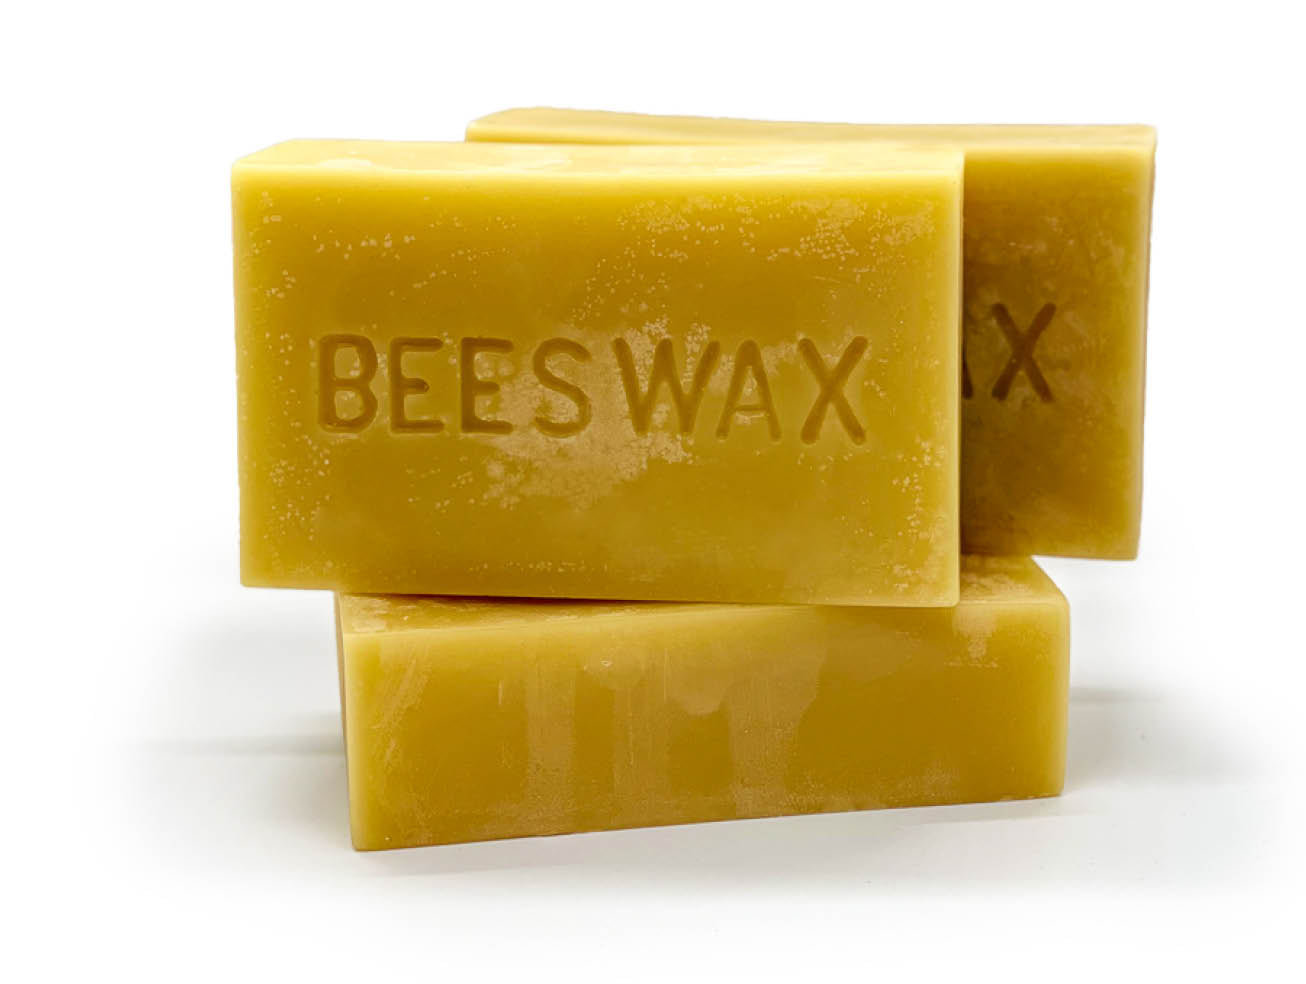 Pure Beeswax - 1 lb Strip Wax by Mann Lake